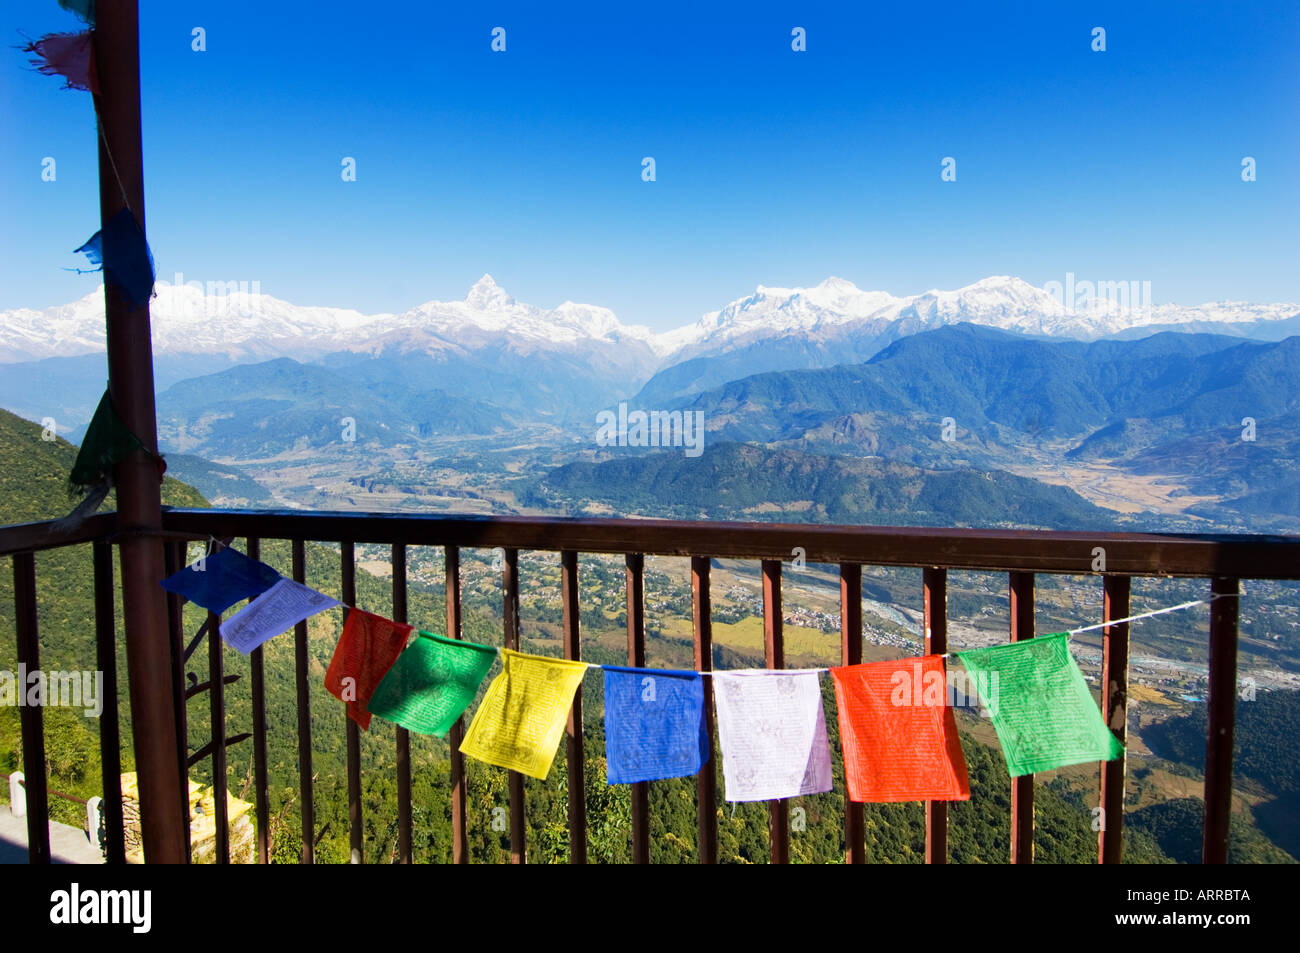 Sarangkot Pokhara à Outlook la sainte montagne Machhapuchare panorama himalayen vallée de Katmandou NÉPAL ANNAPURNA region Asie Banque D'Images